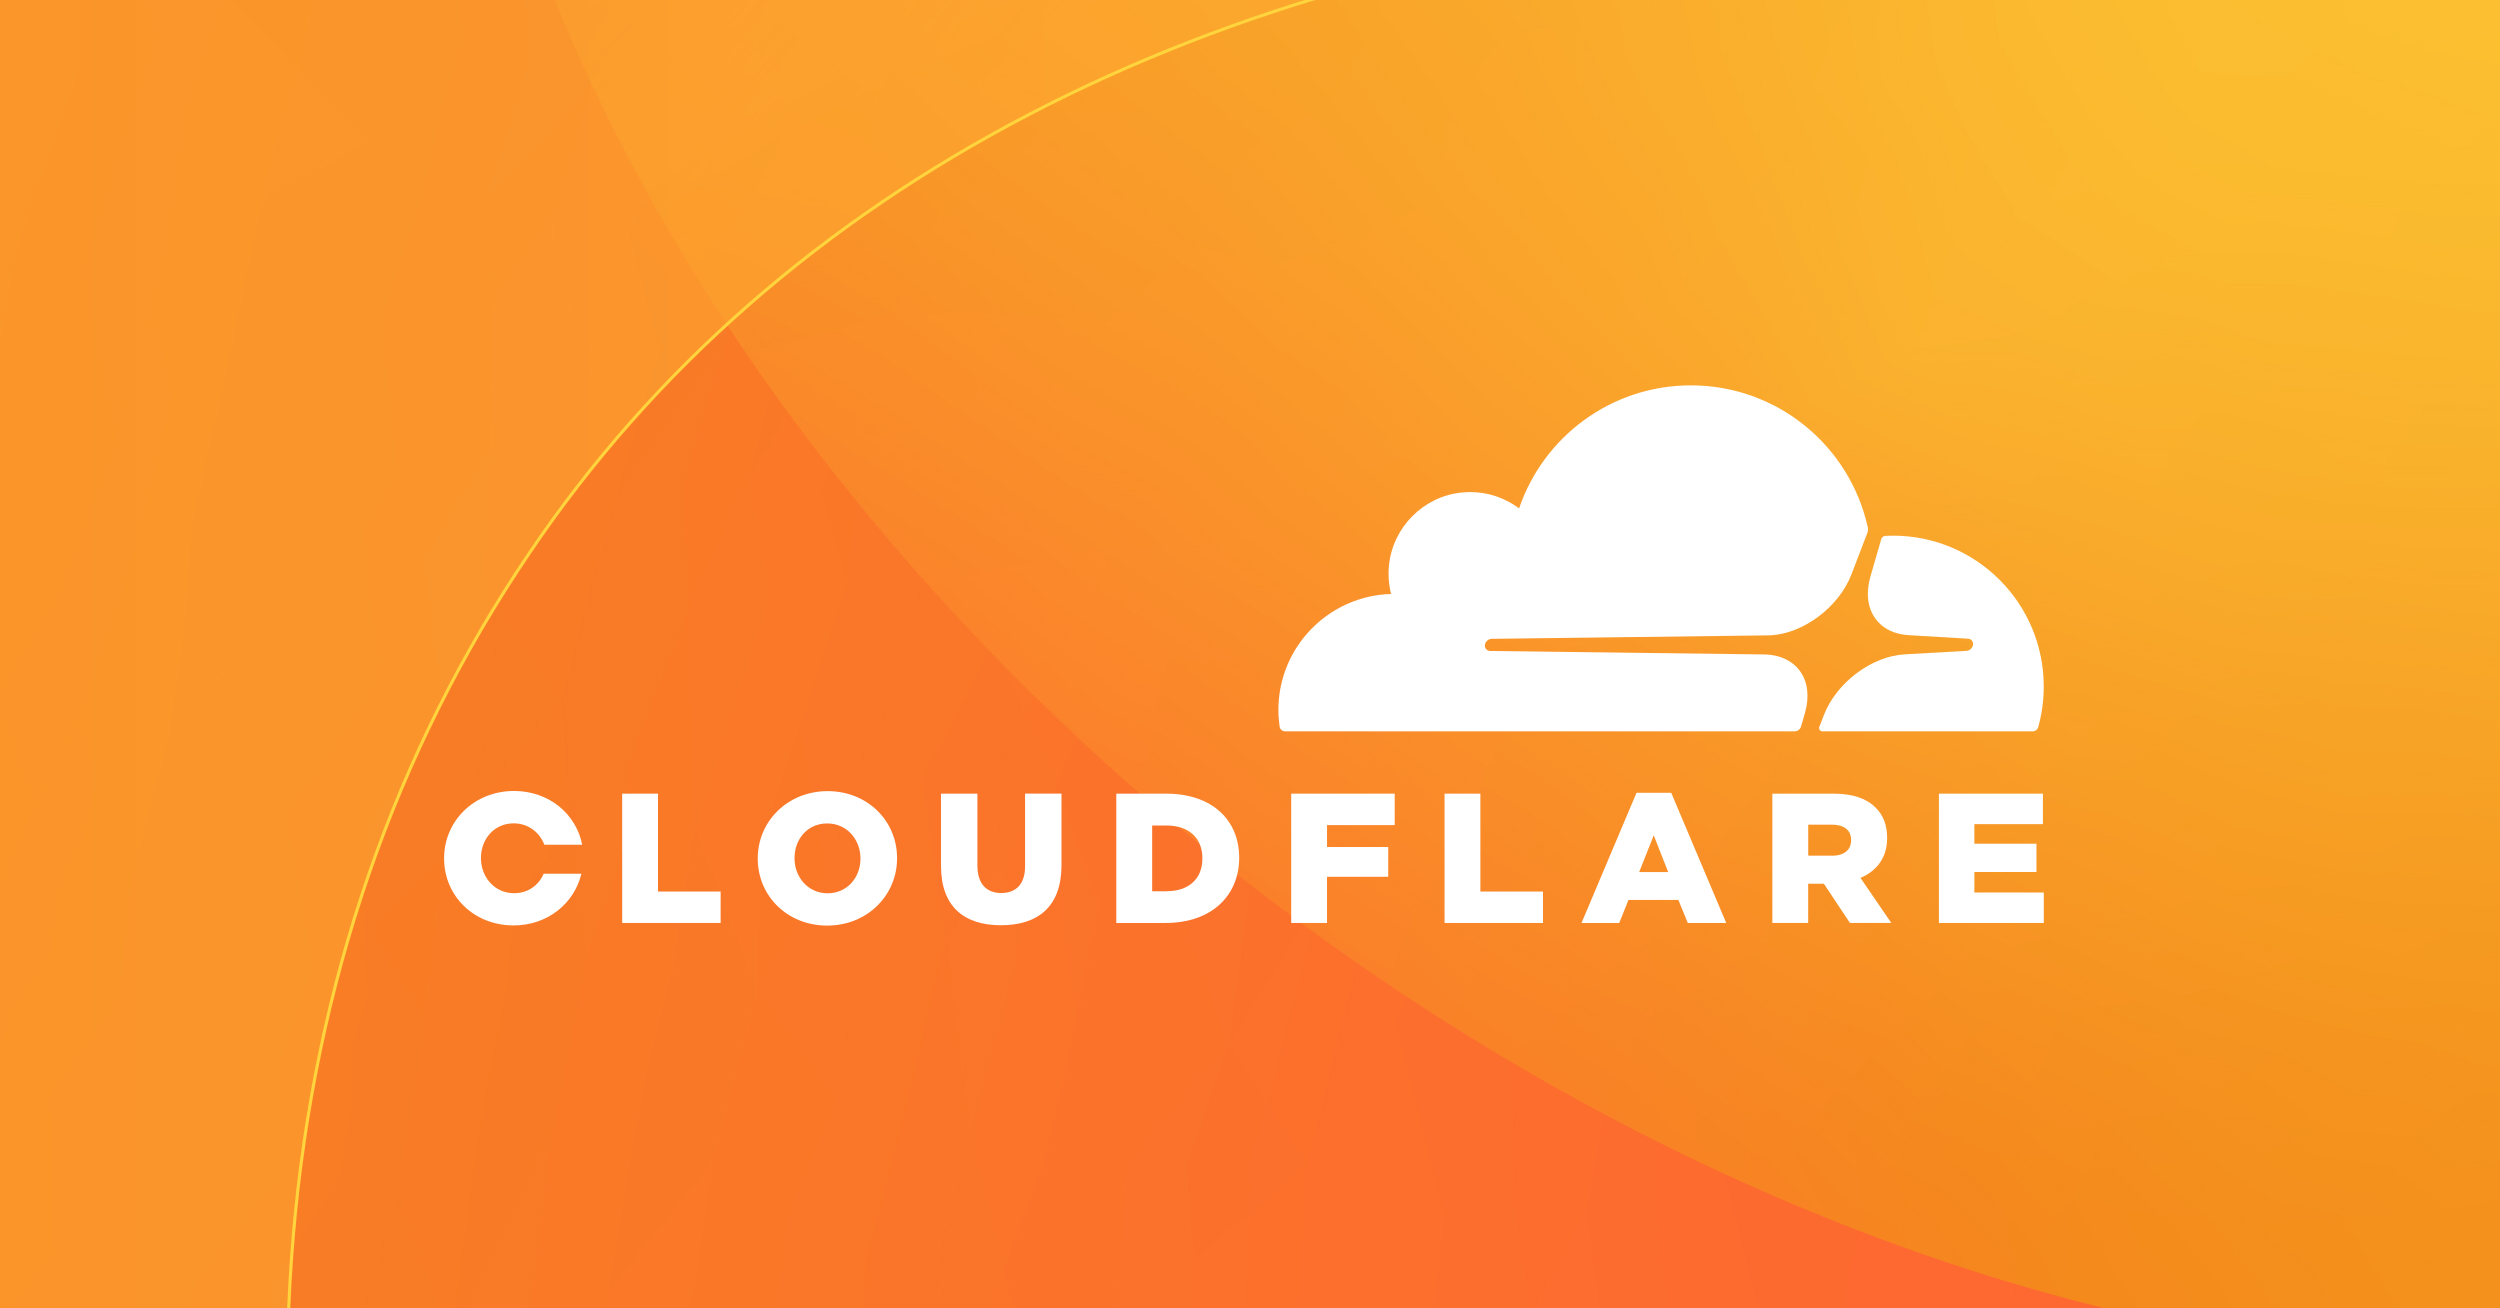 修改 Nginx 配置来反馈 Cloudflare 真实用户 IP